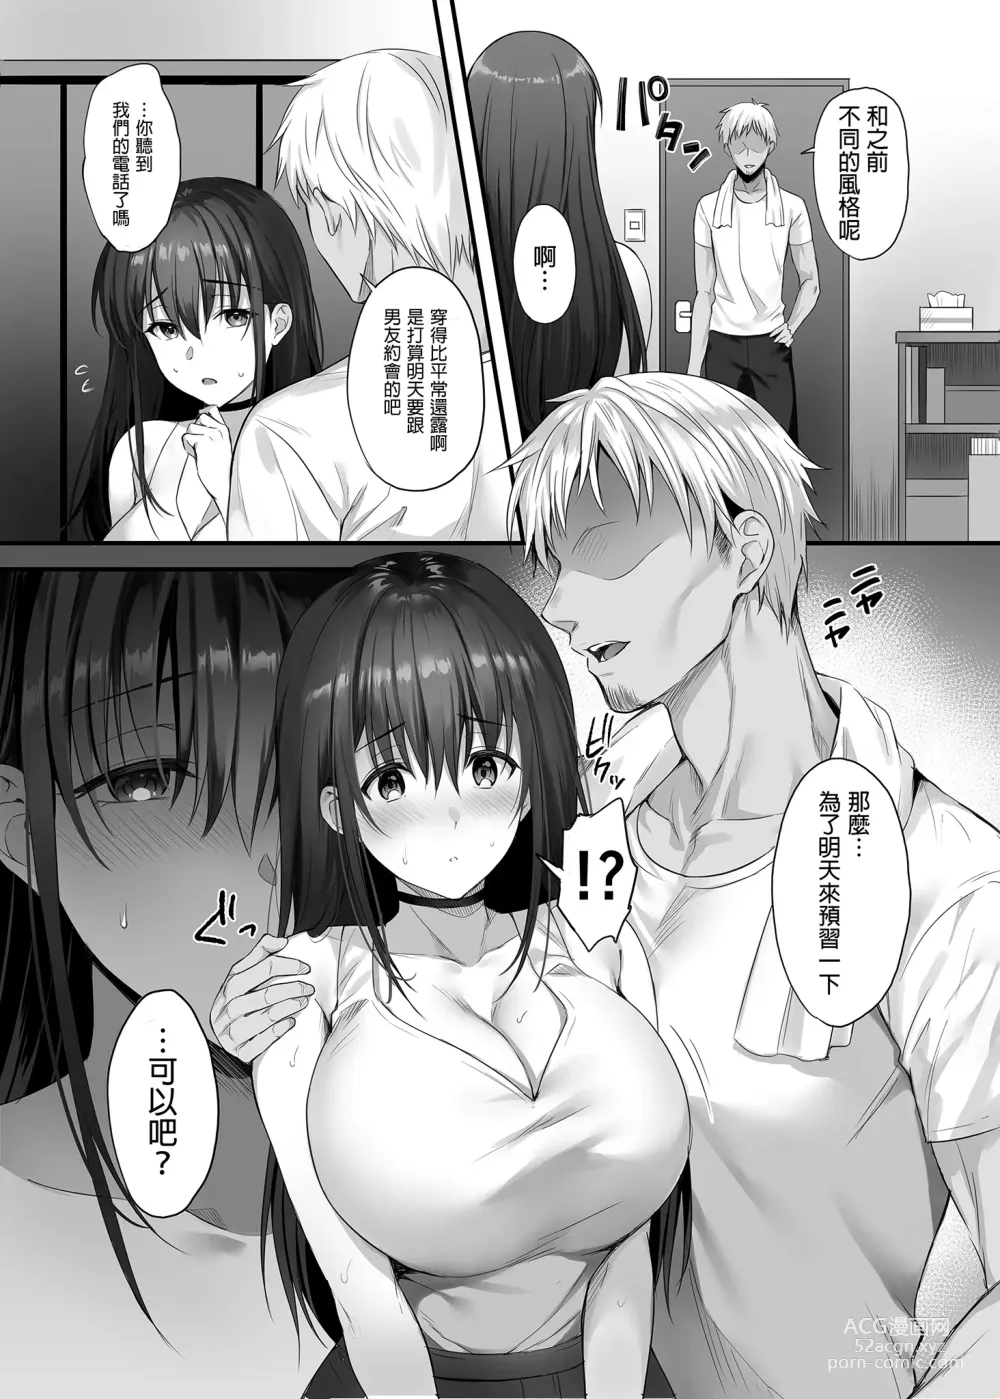 Page 22 of doujinshi 已經有伴侶的我卻成天被強制要求性關係。 (decensored)